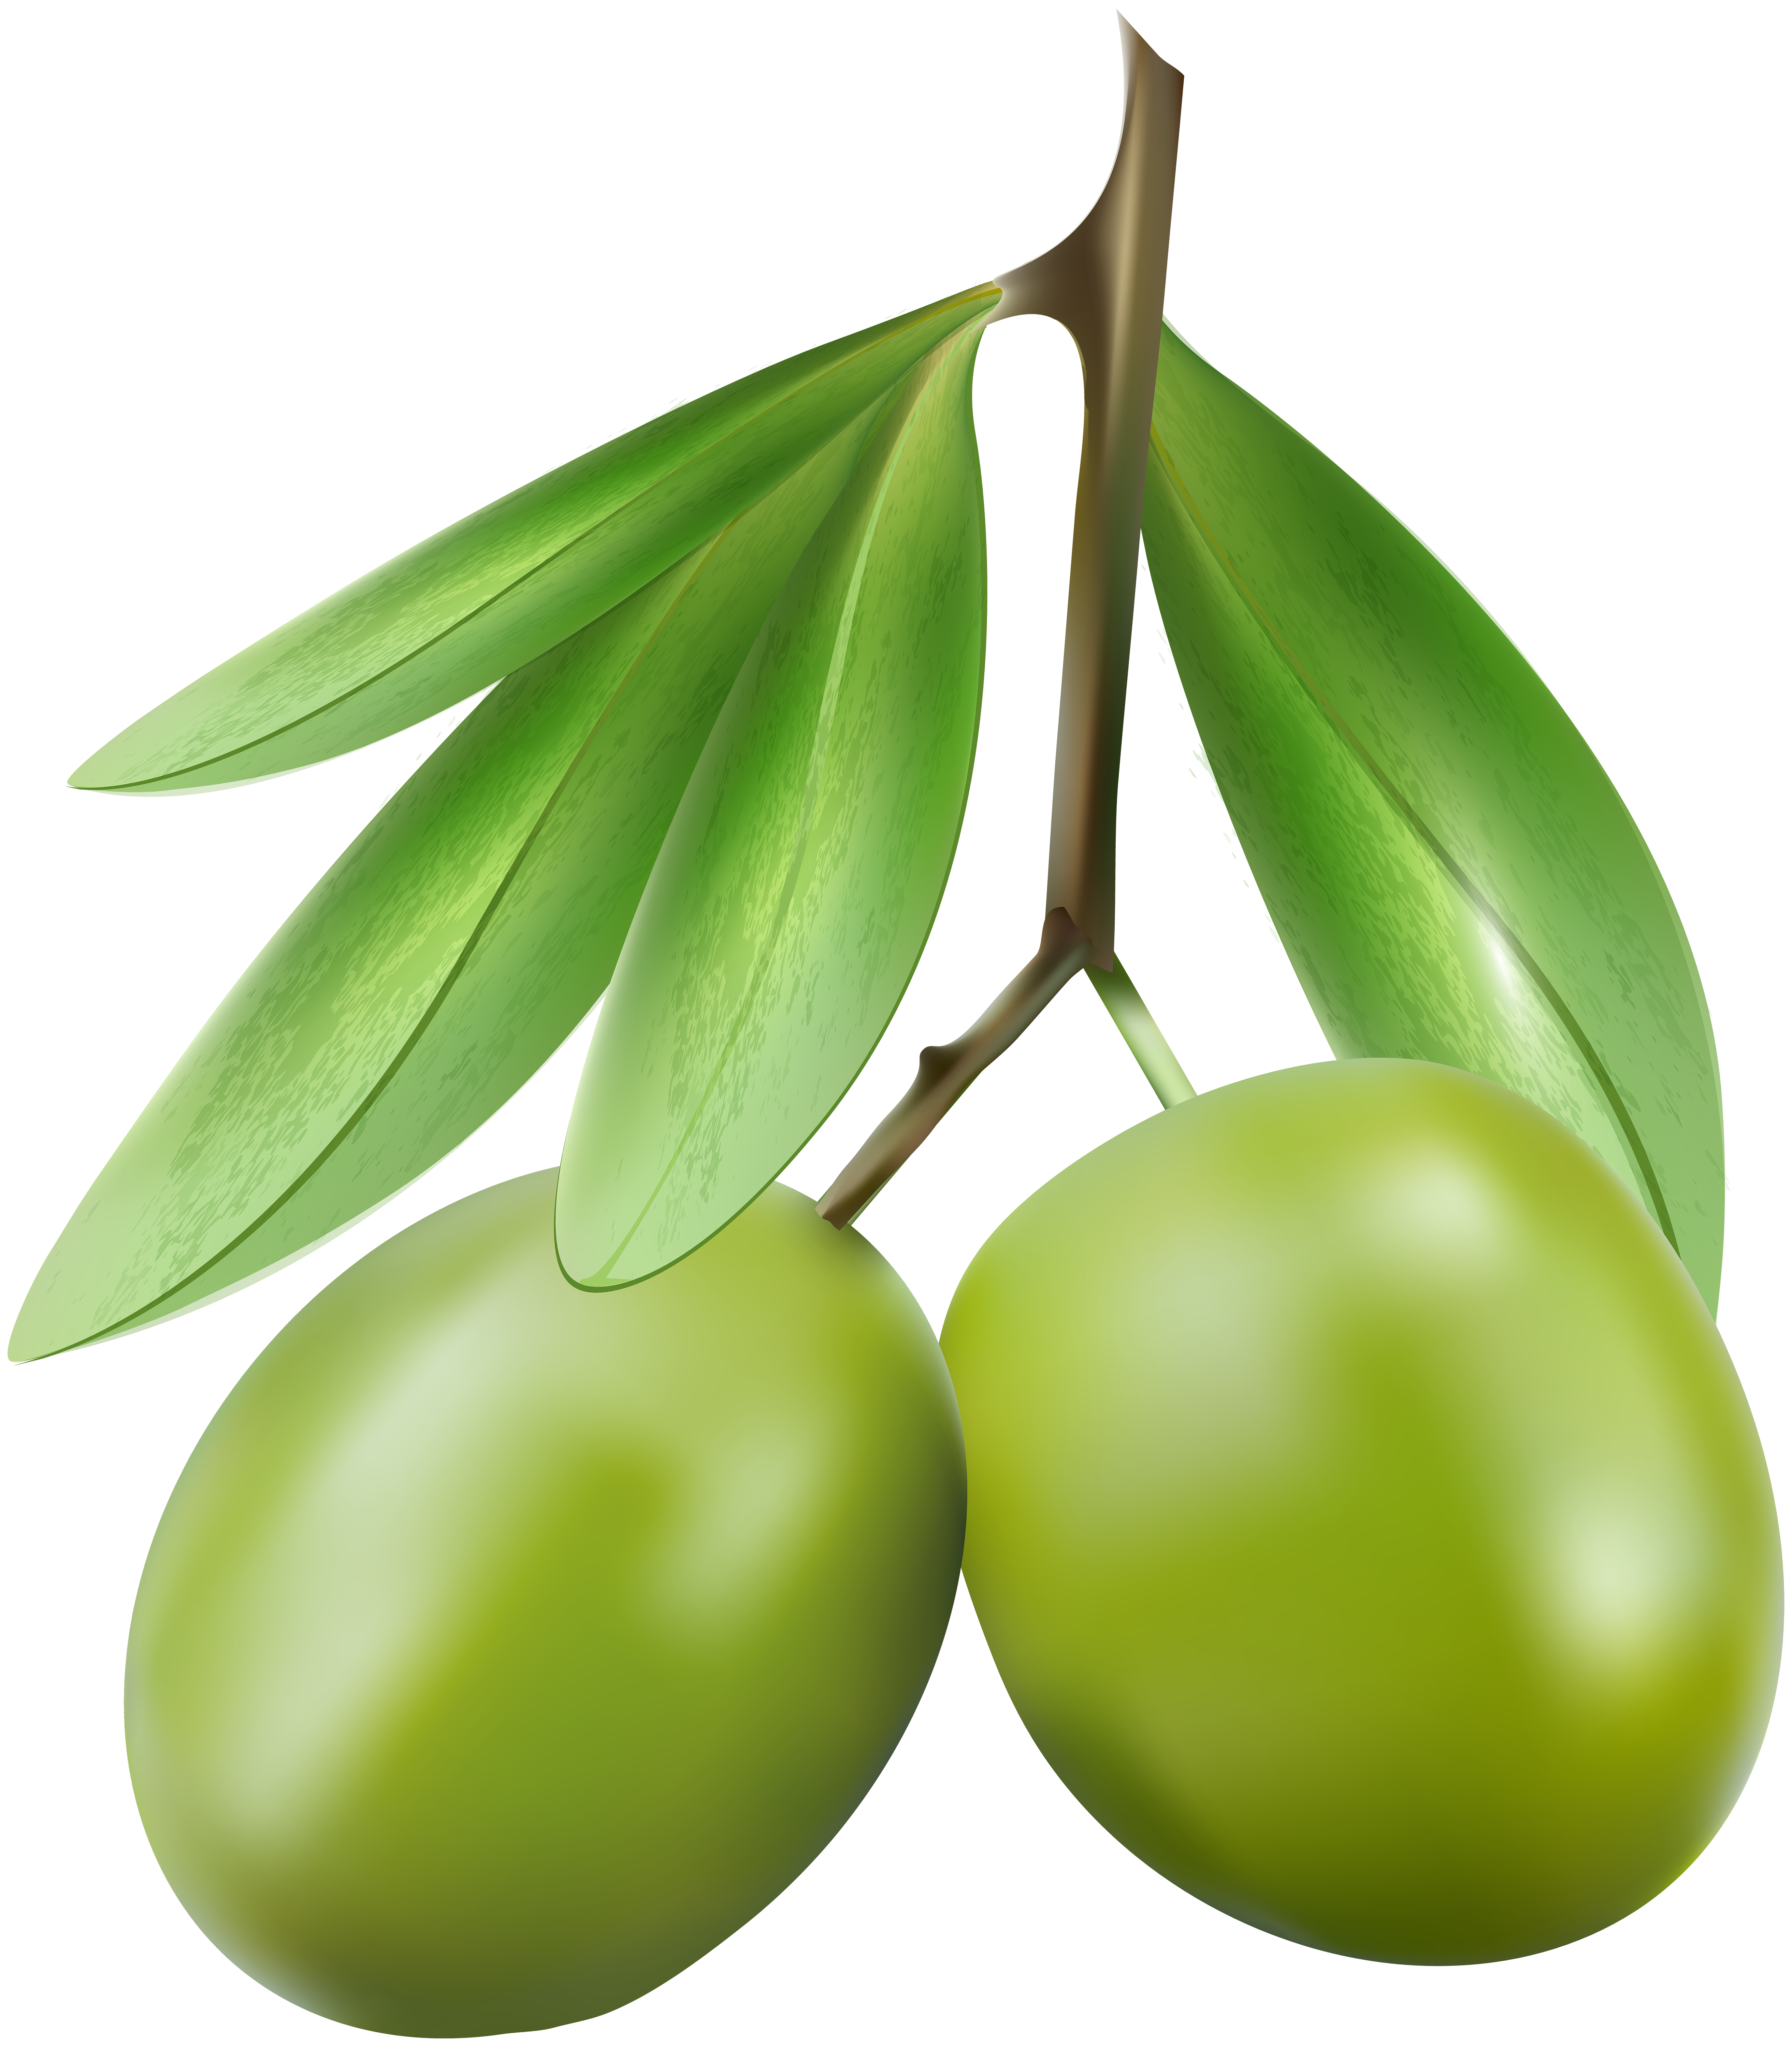 Green Olives PNG Clip Art Image.